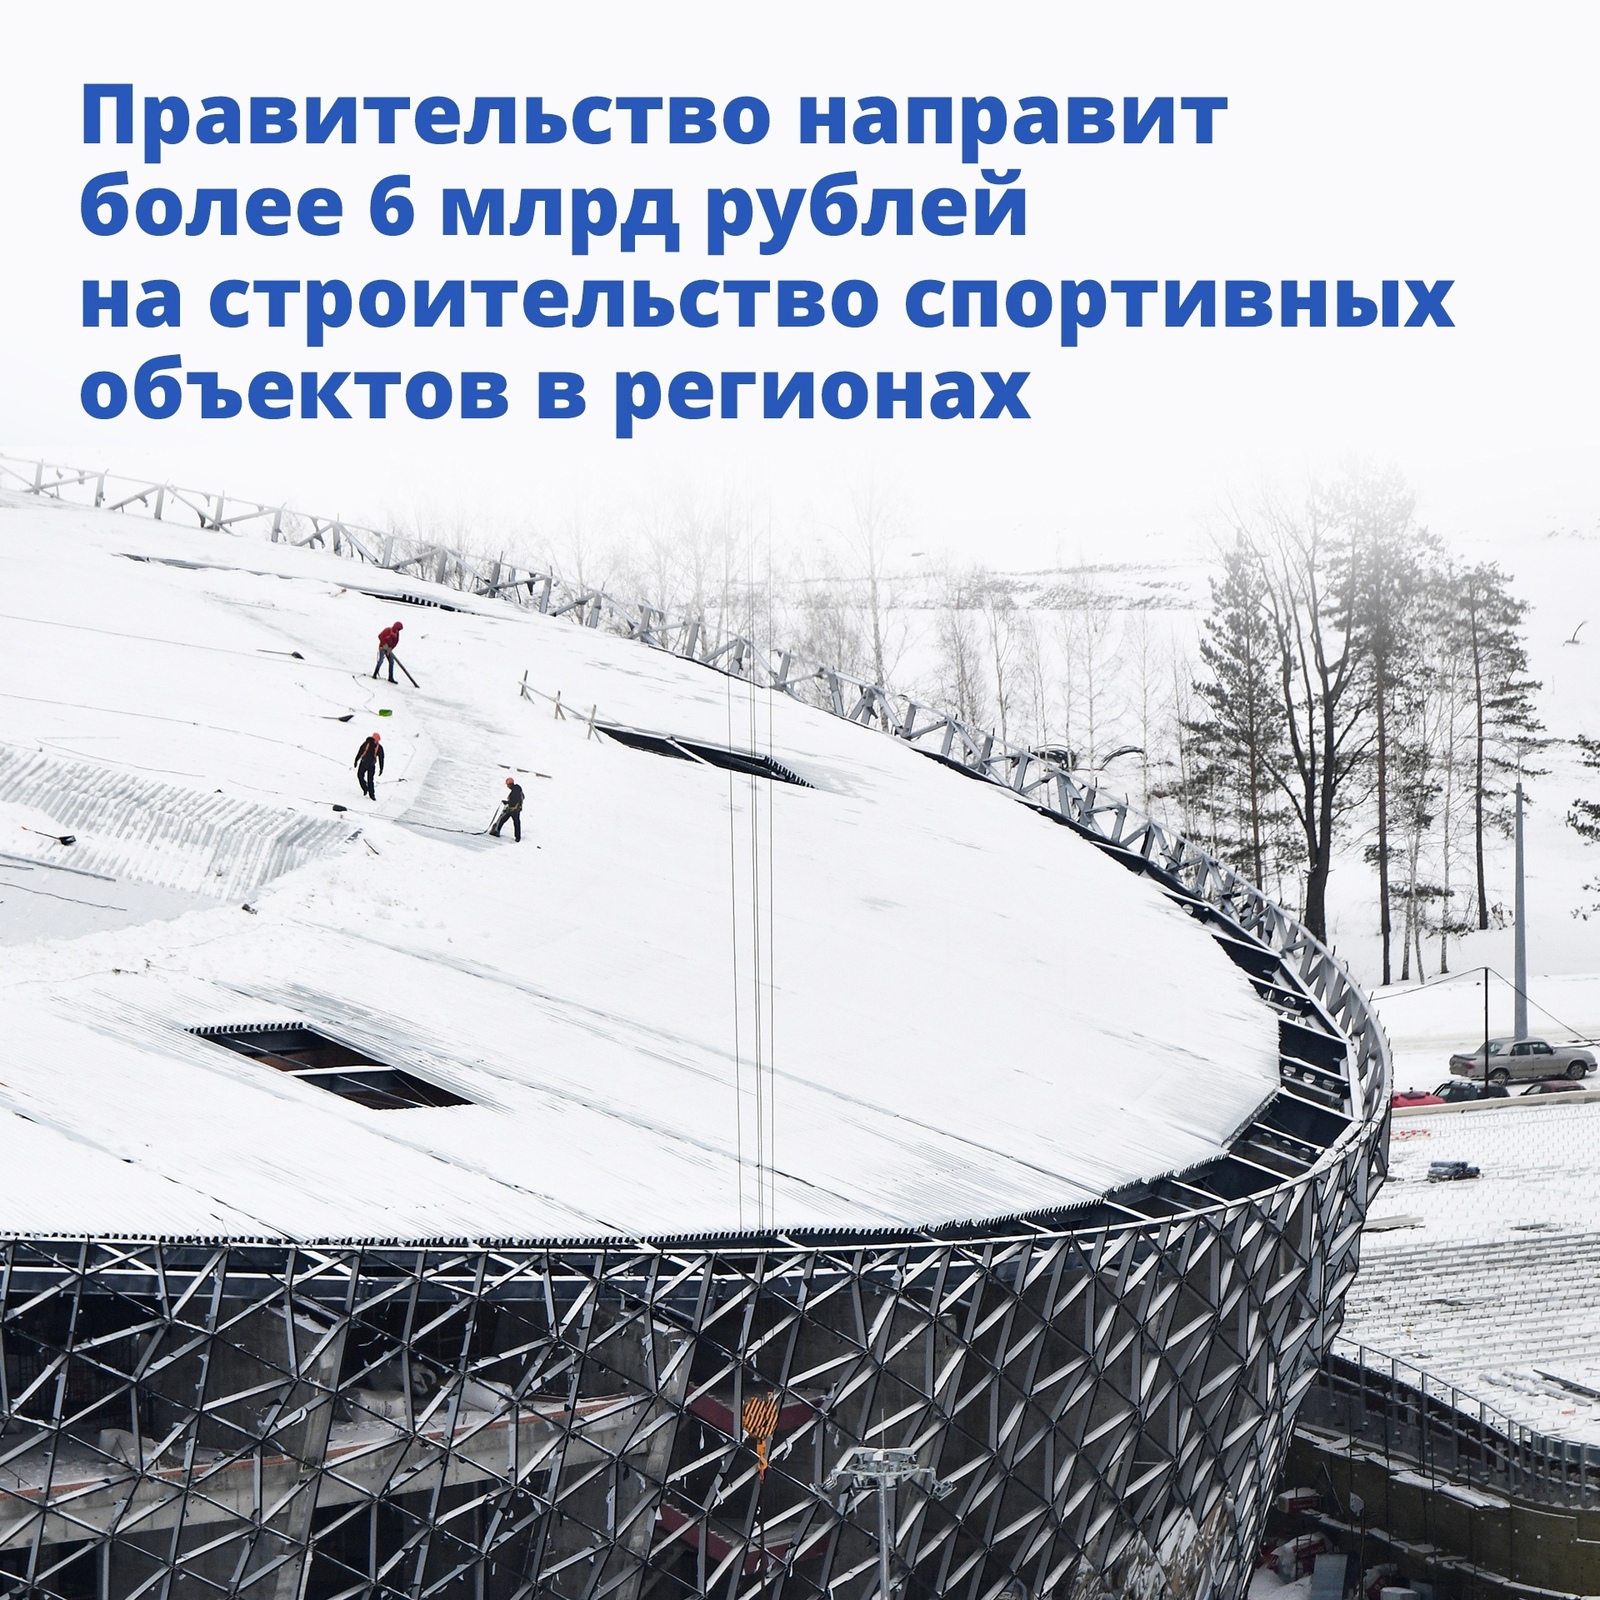 Регионы получат более 6 млрд рублей на строительство спортивных объектов, сообщается на сайте правительства России.